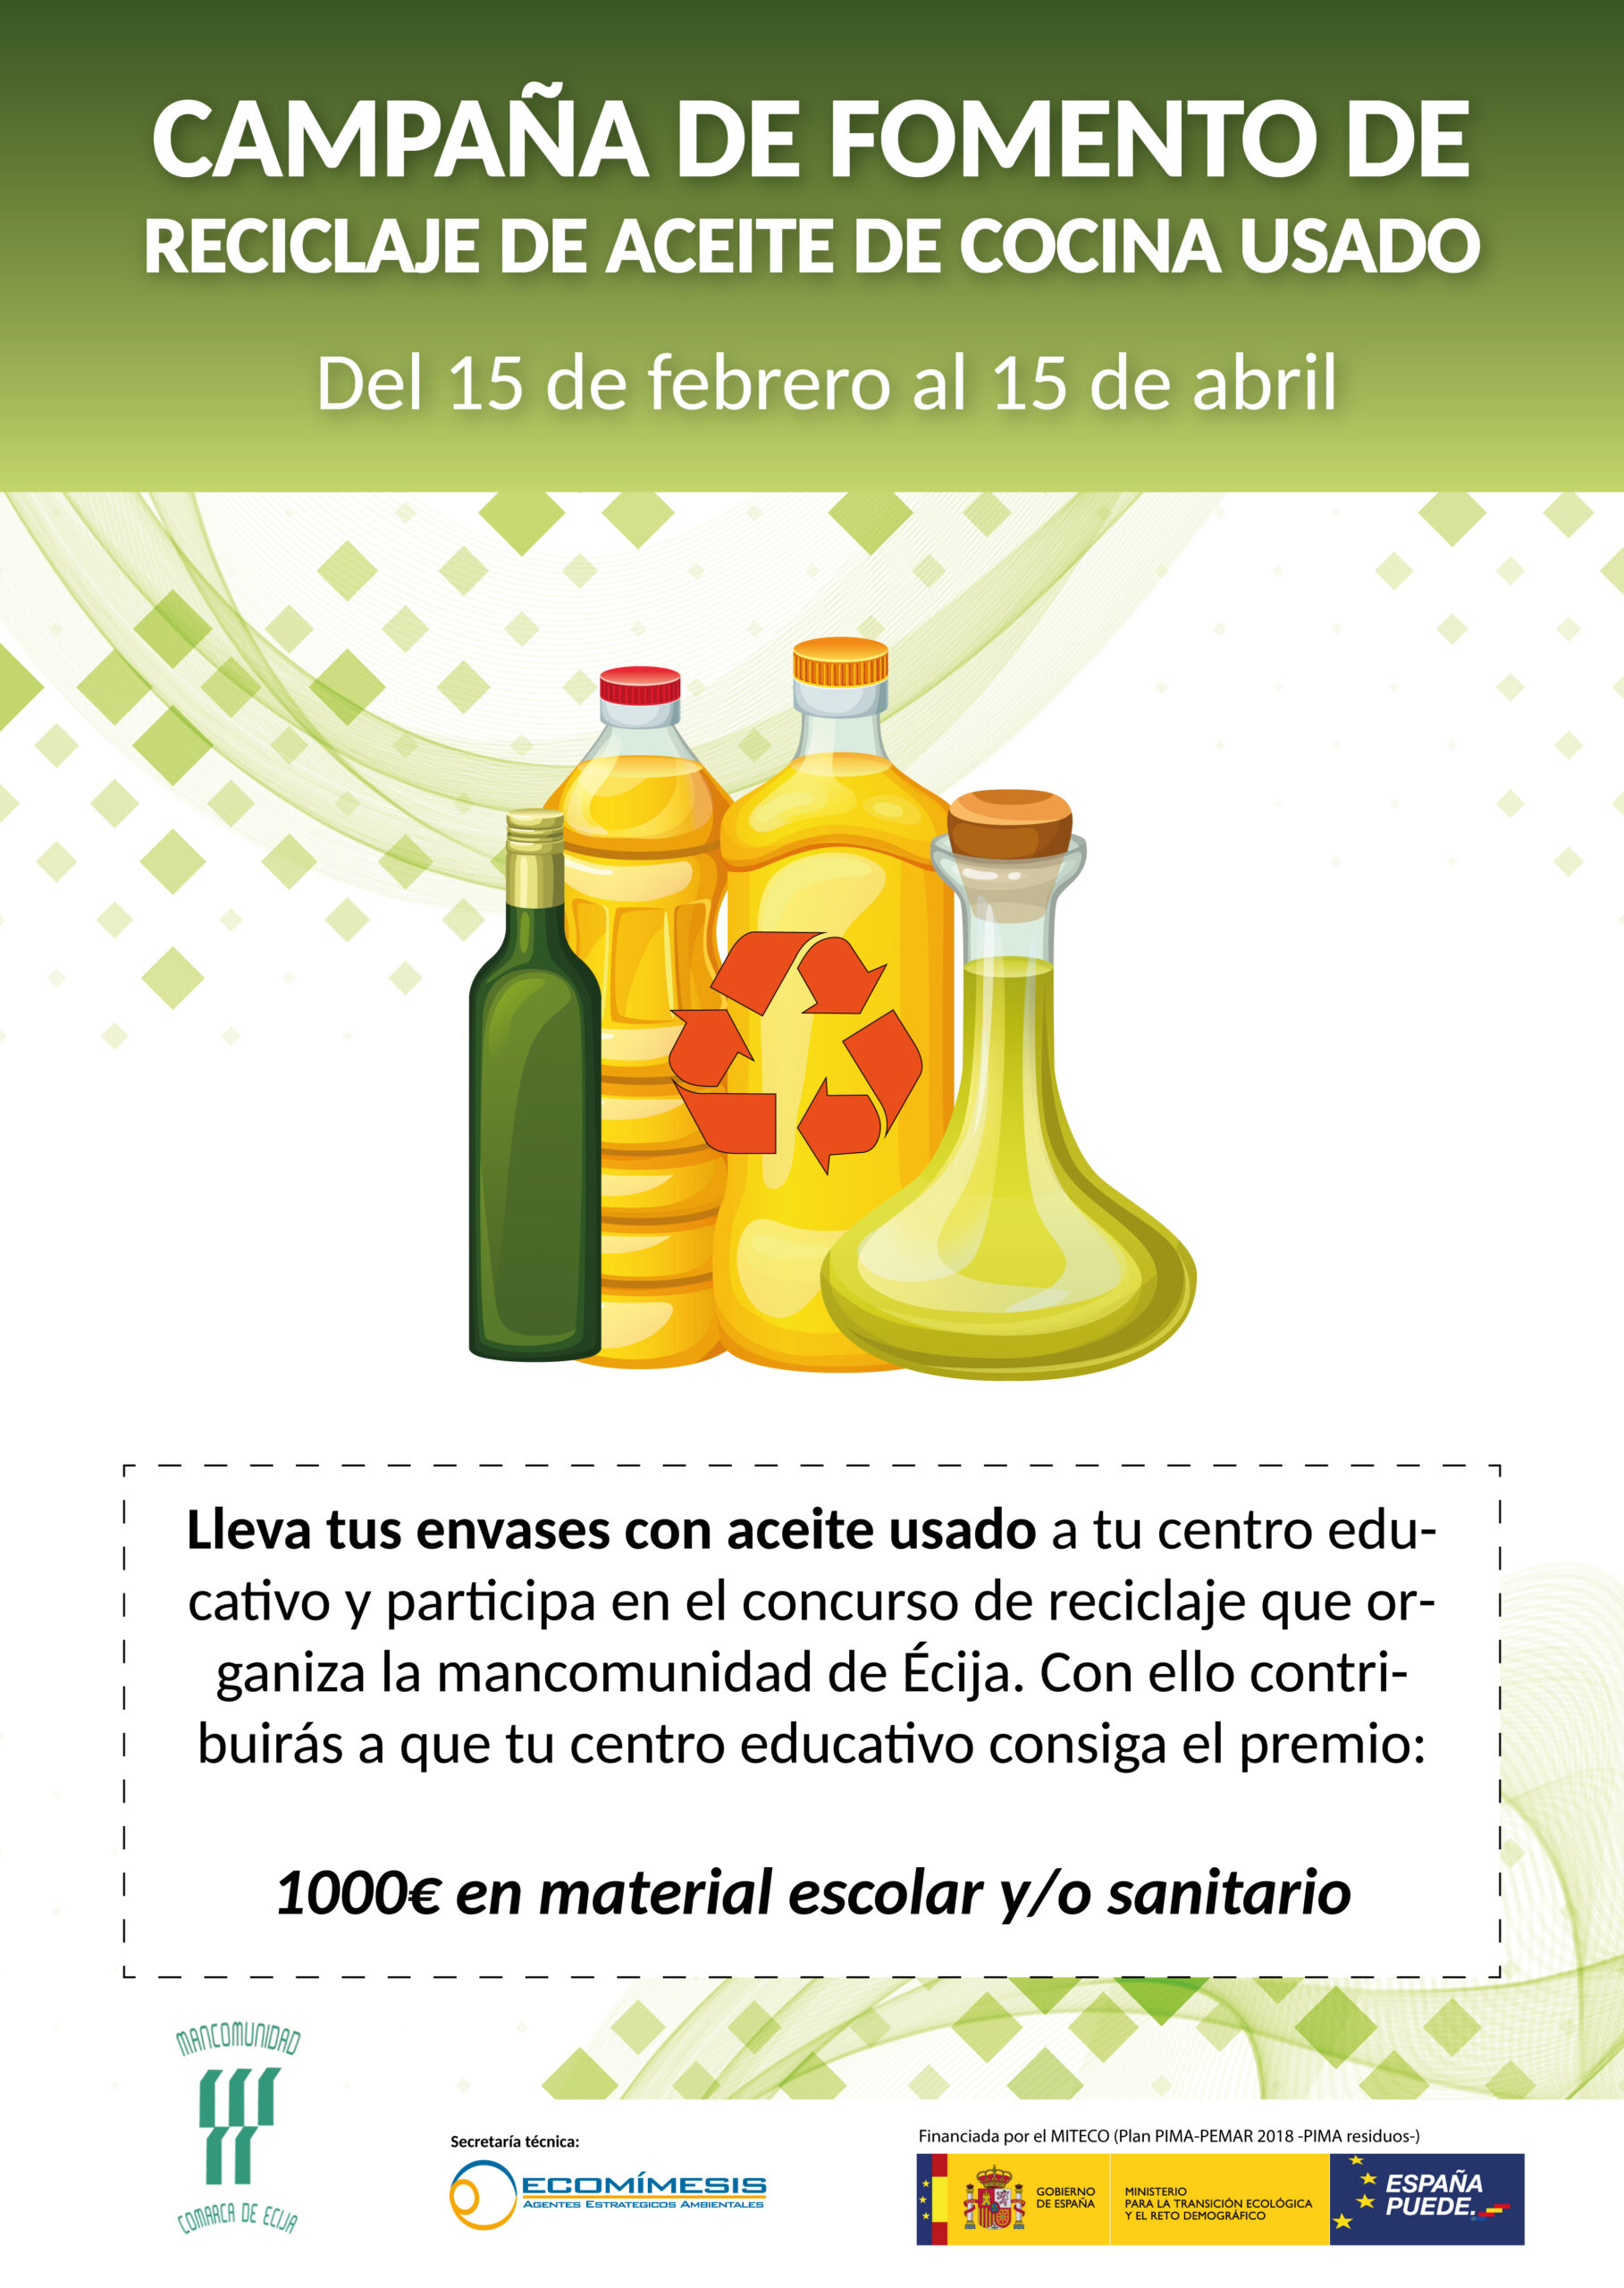 Estribillo Quedar asombrado pizarra Fuentes de Andalucía participará en una campaña para fomentar el reciclaje  de aceites de cocina usados en la comarca -